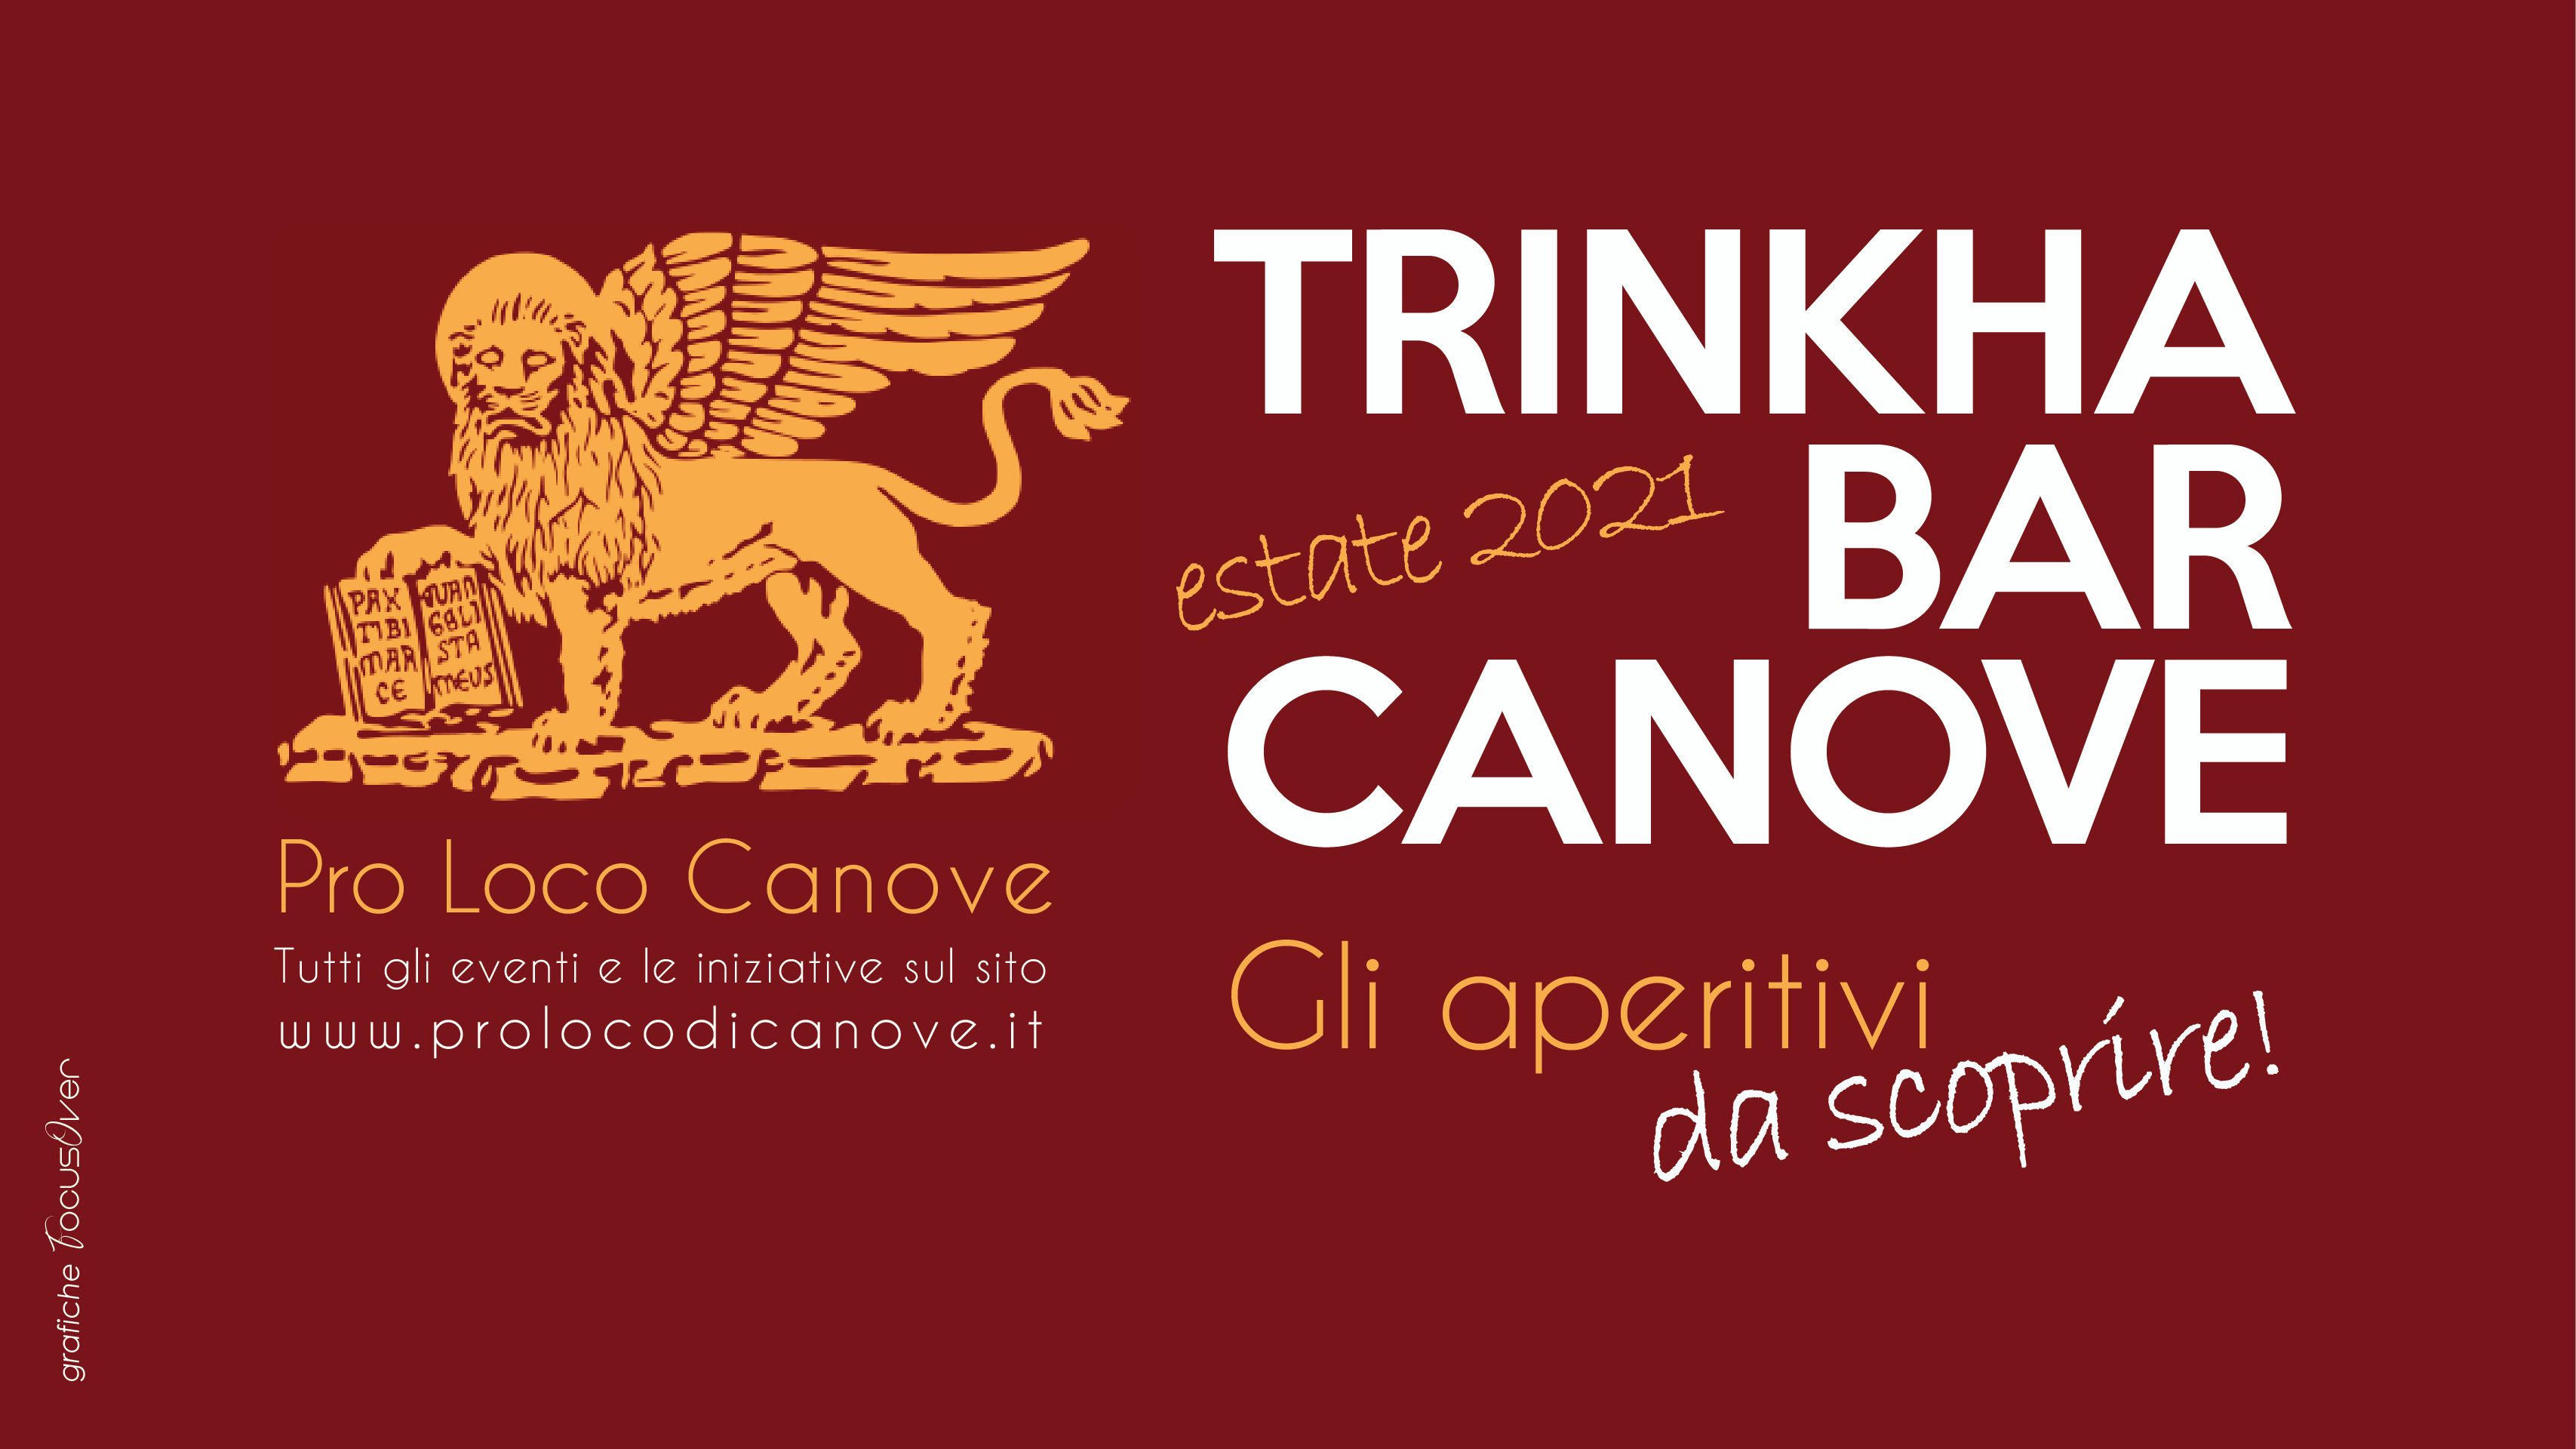 Trinkha-Bar Canove - gli aperitivi dell'estate 2021